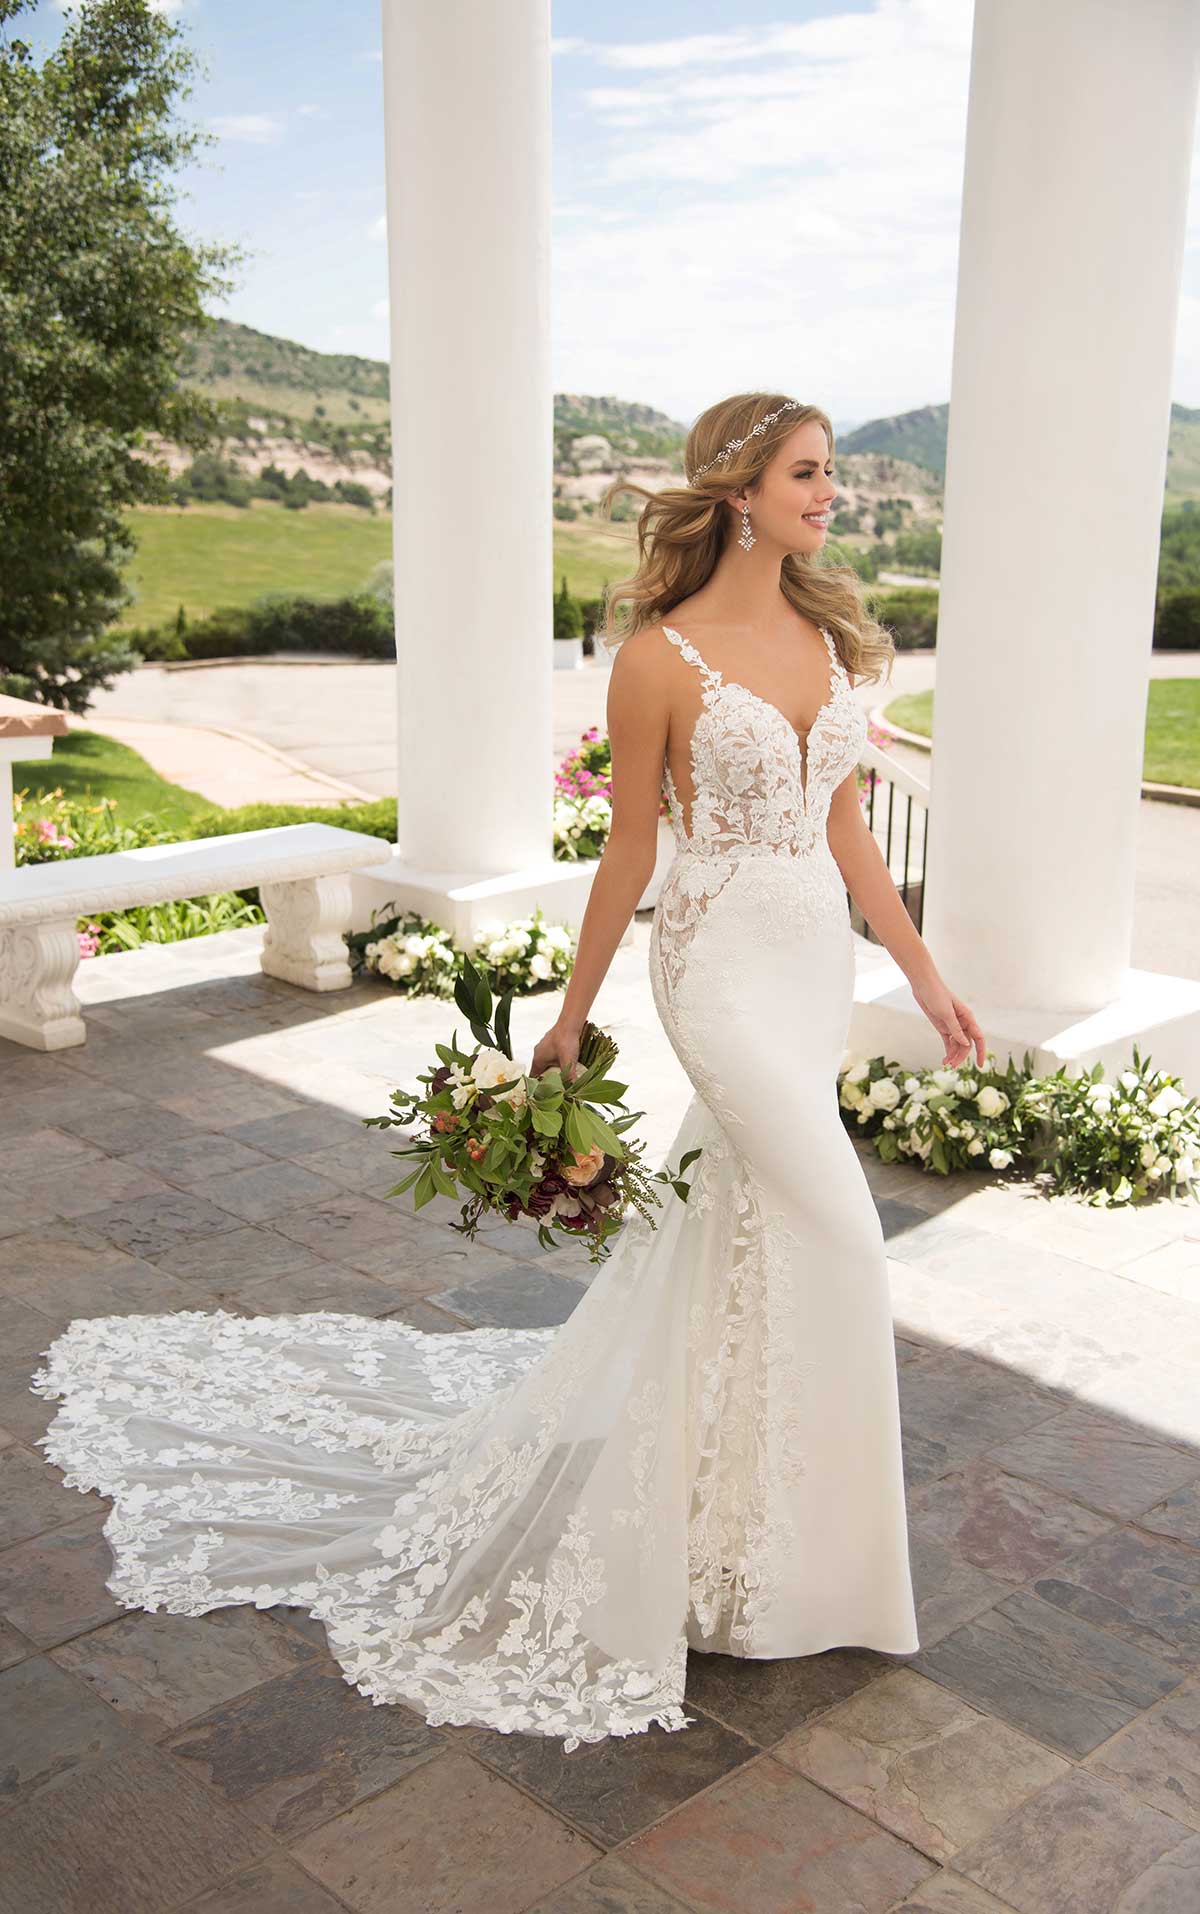 wedding dress bridal gown